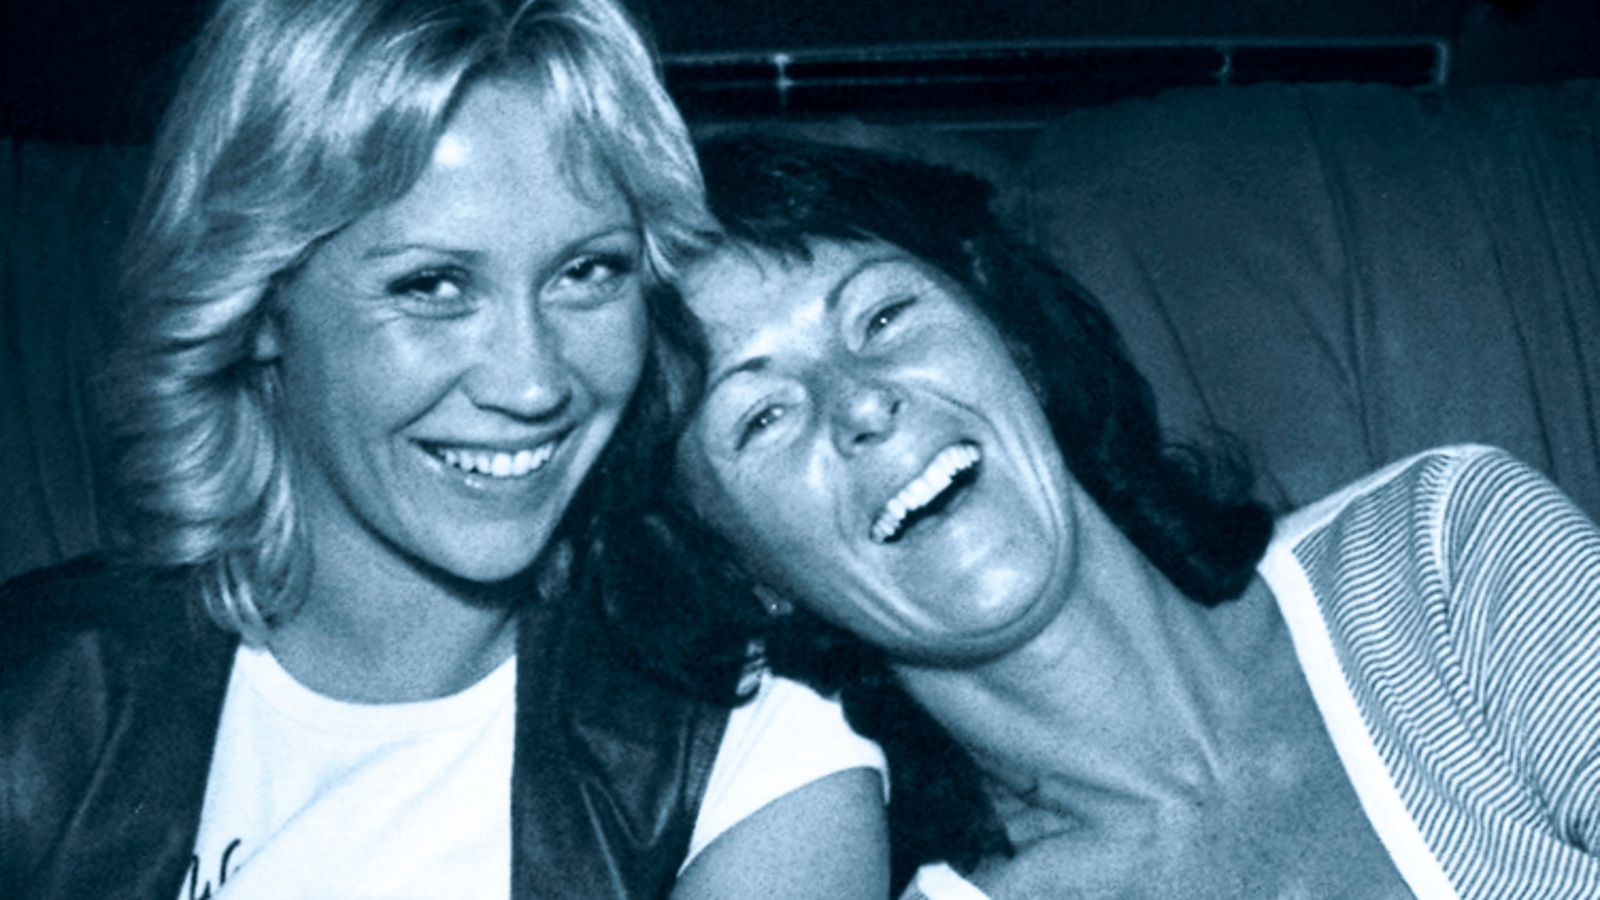 Kuvassa ovat Agneta Fältskog ja Ann-Frid Lyngstad kasvokuvassa.  Vasemmalla on vaaleatukkainen Fältskog ja häneen nojaa tummatukkainen Lyngstad. He molemmat nauravat.